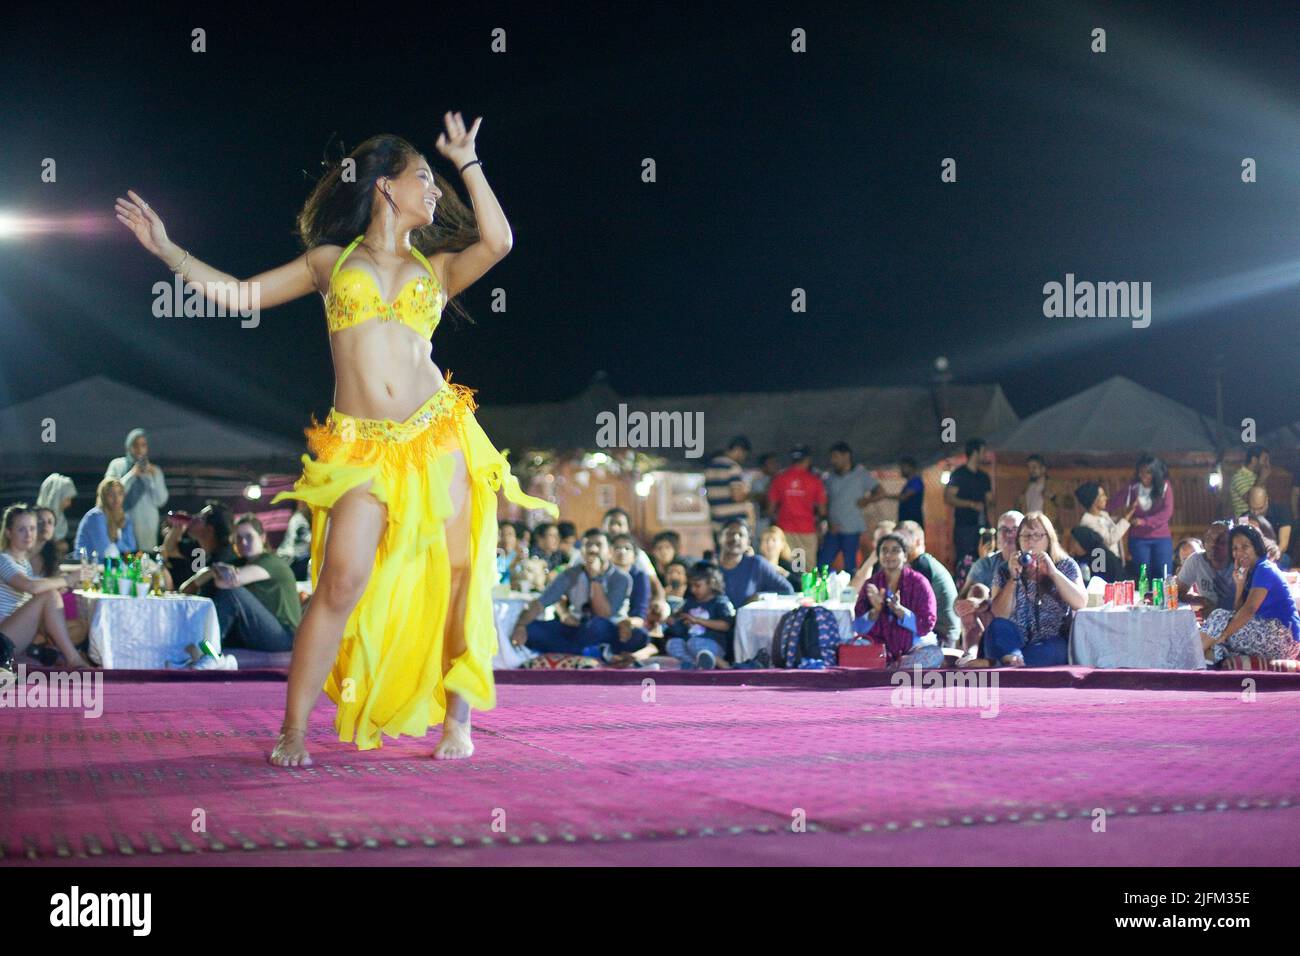 Bombay Bellywood', oriente y occidente unidos a través la danza